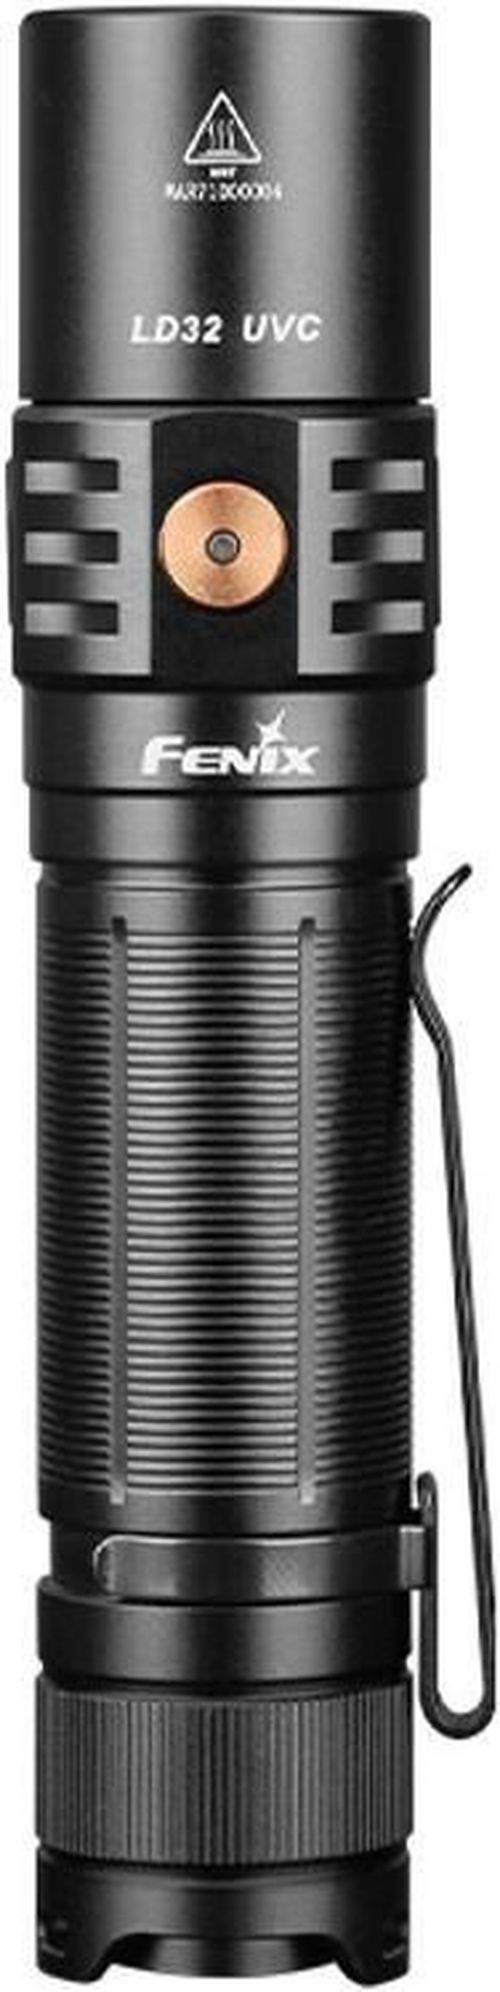 купить Фонарь Fenix LD32 UVC LED Flashlight в Кишинёве 